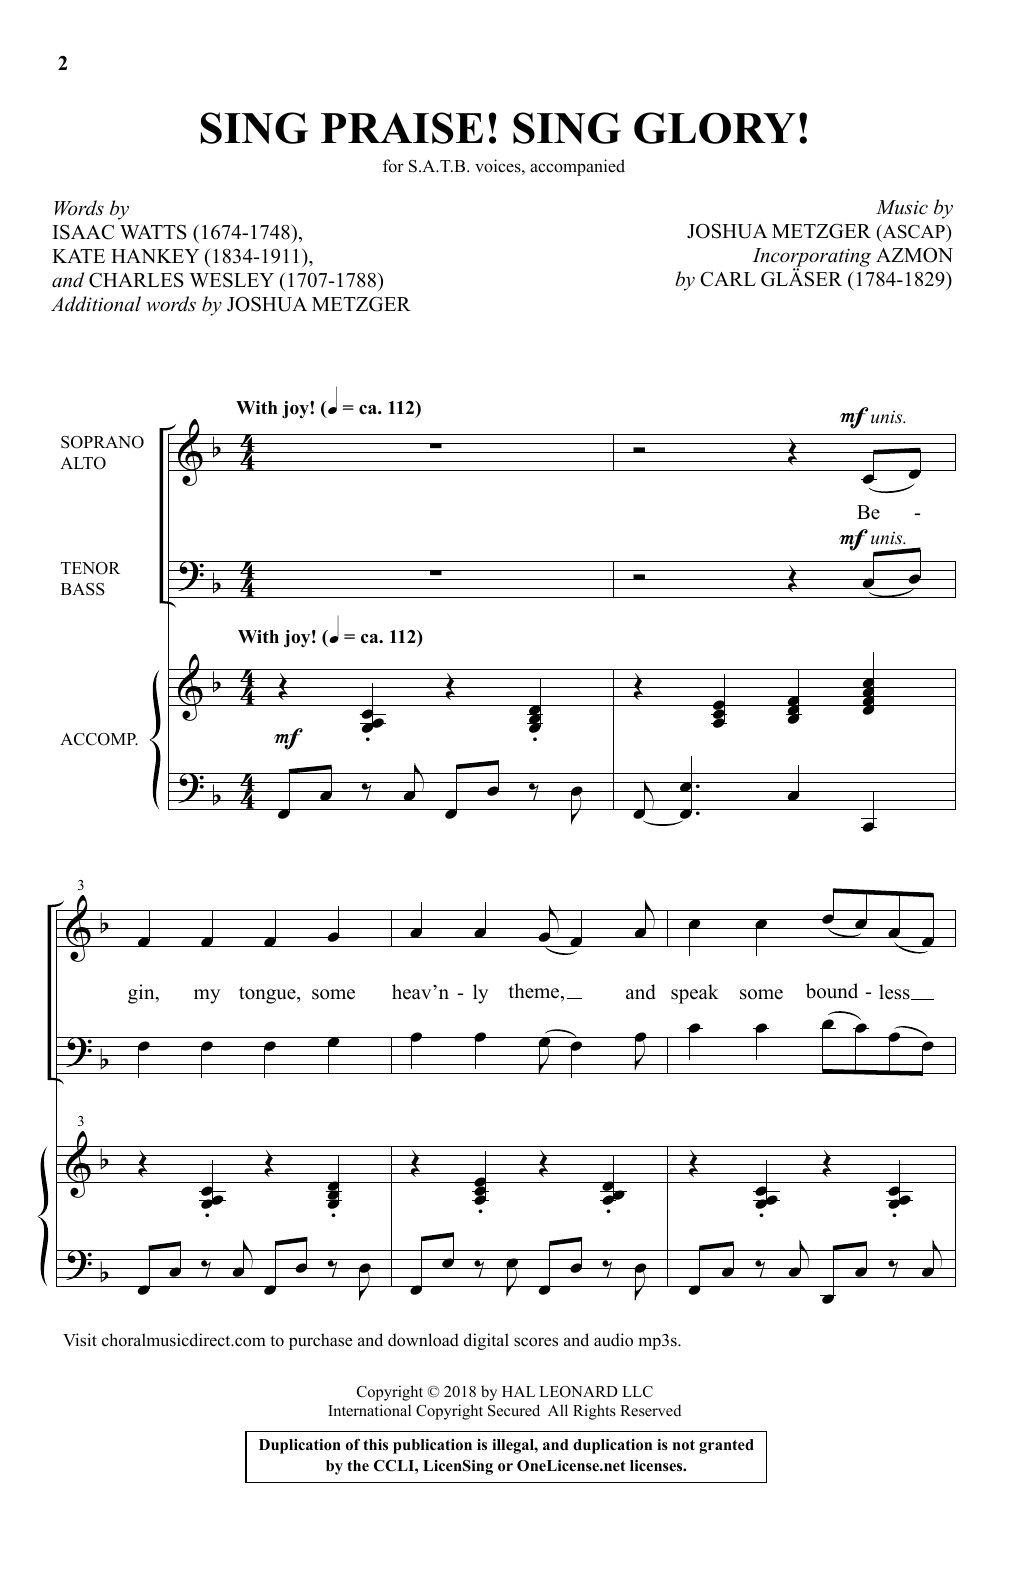 Download Joshua Metzger Sing Praise! Sing Glory! Sheet Music